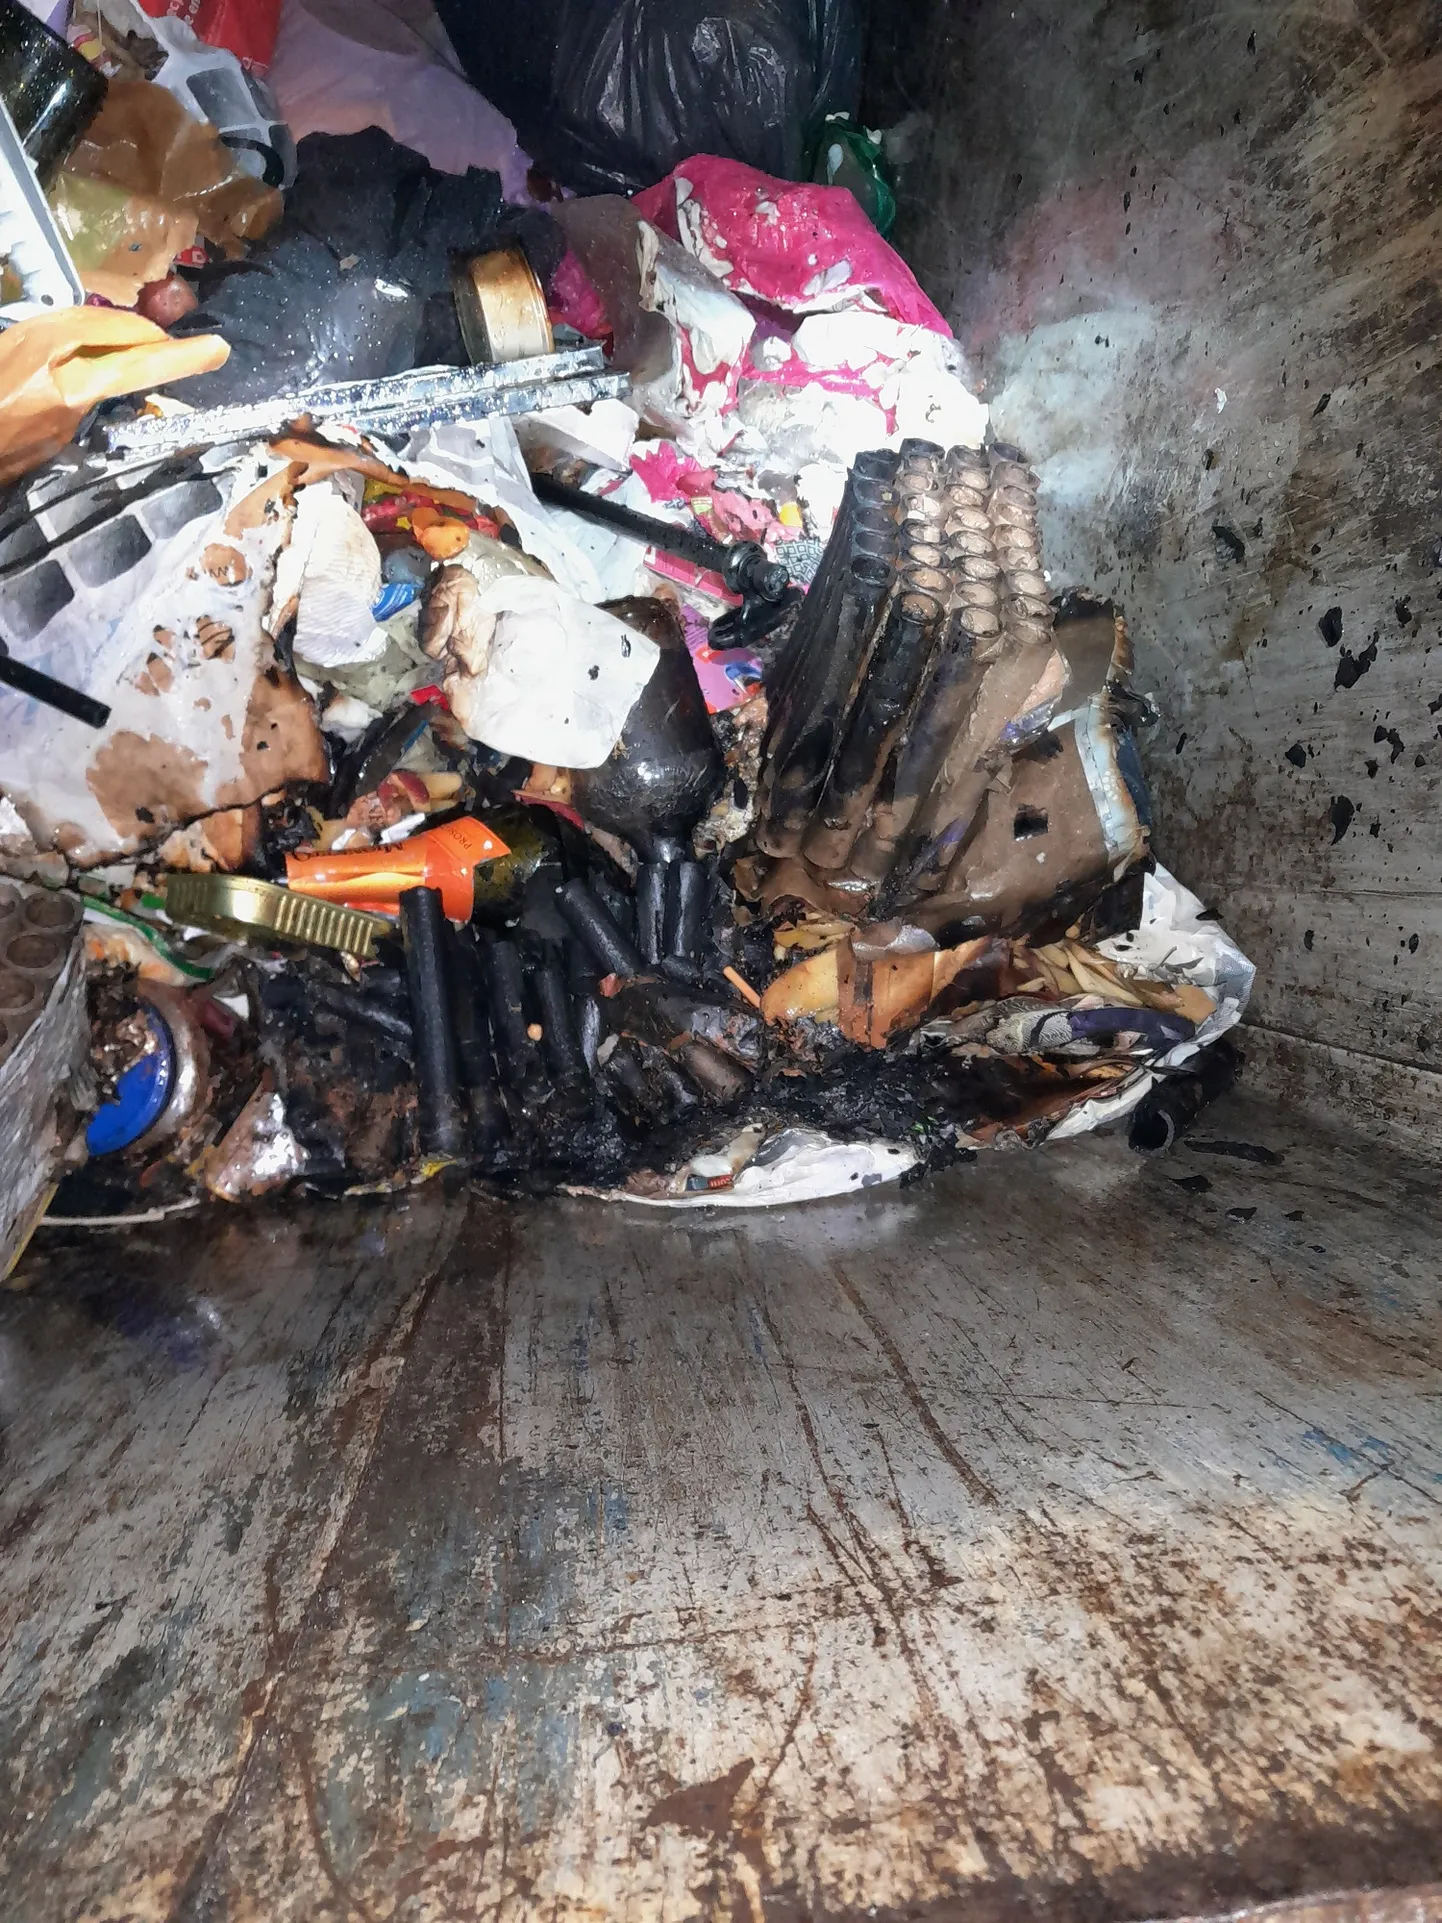 Использованный корпус фейерверка, вызвавший возгорание внутри мусорного контейнера.